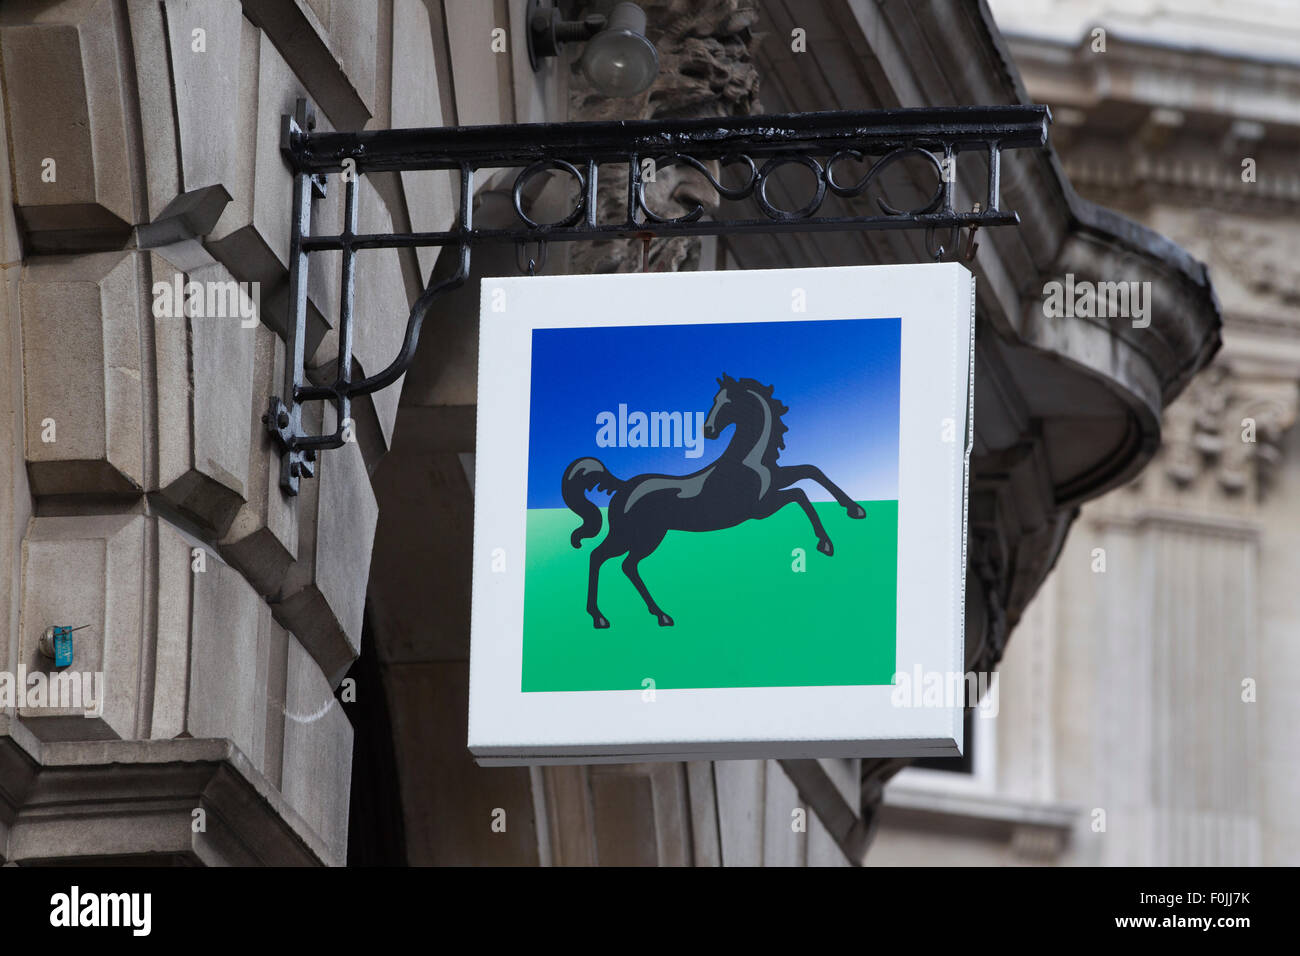 Lloyds Bank, Black Horse logo, Bank, City of London, England, UK Stock Photo